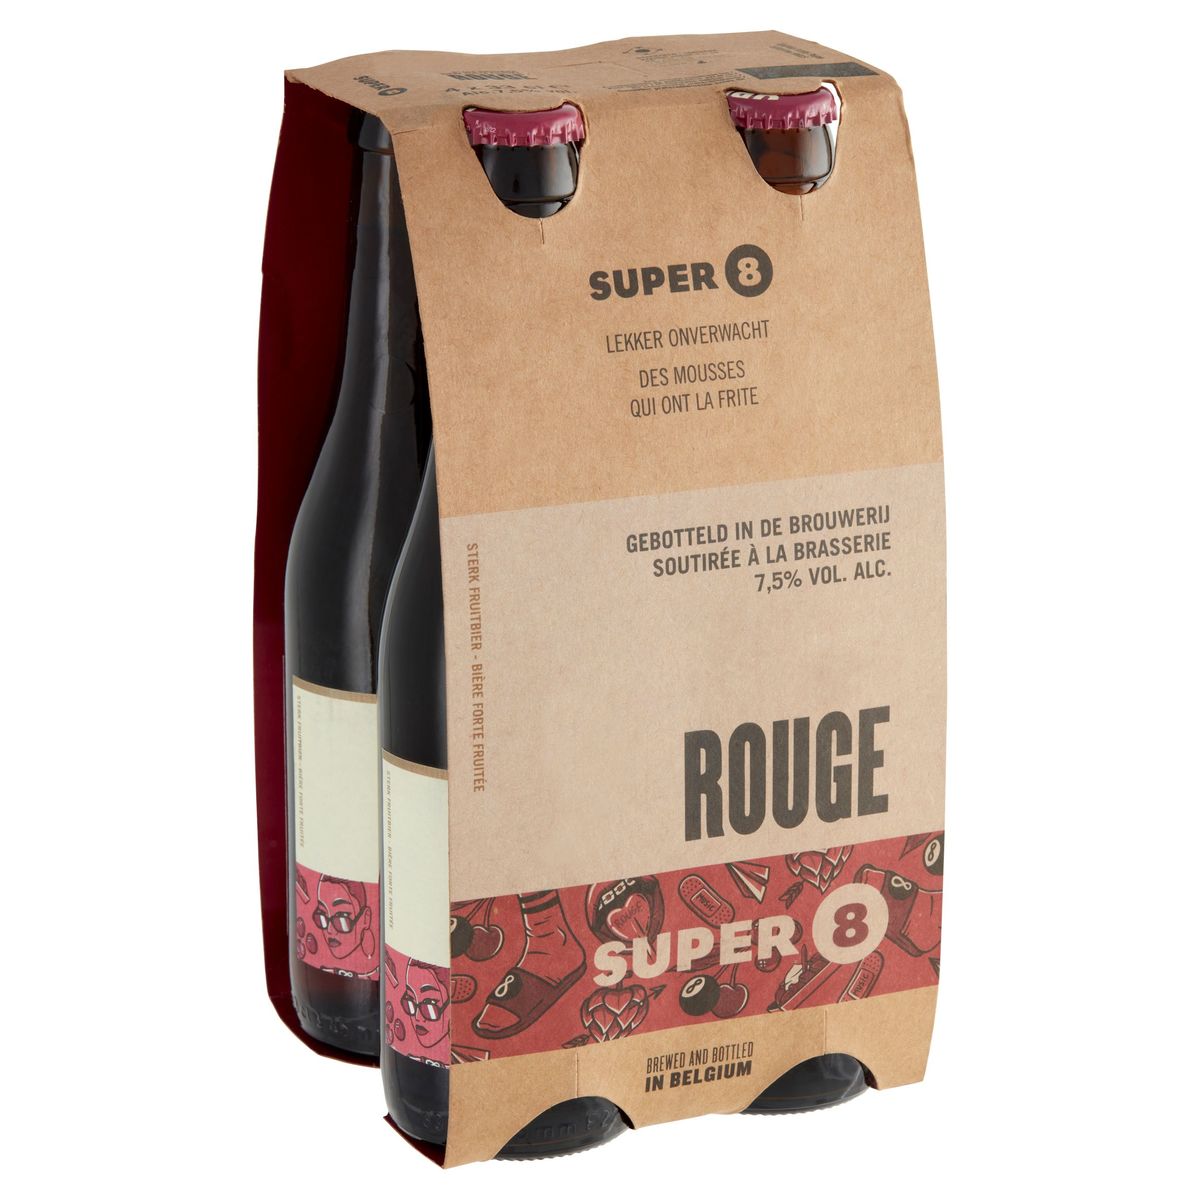 Super 8 Rouge  Brouwerij Haacht